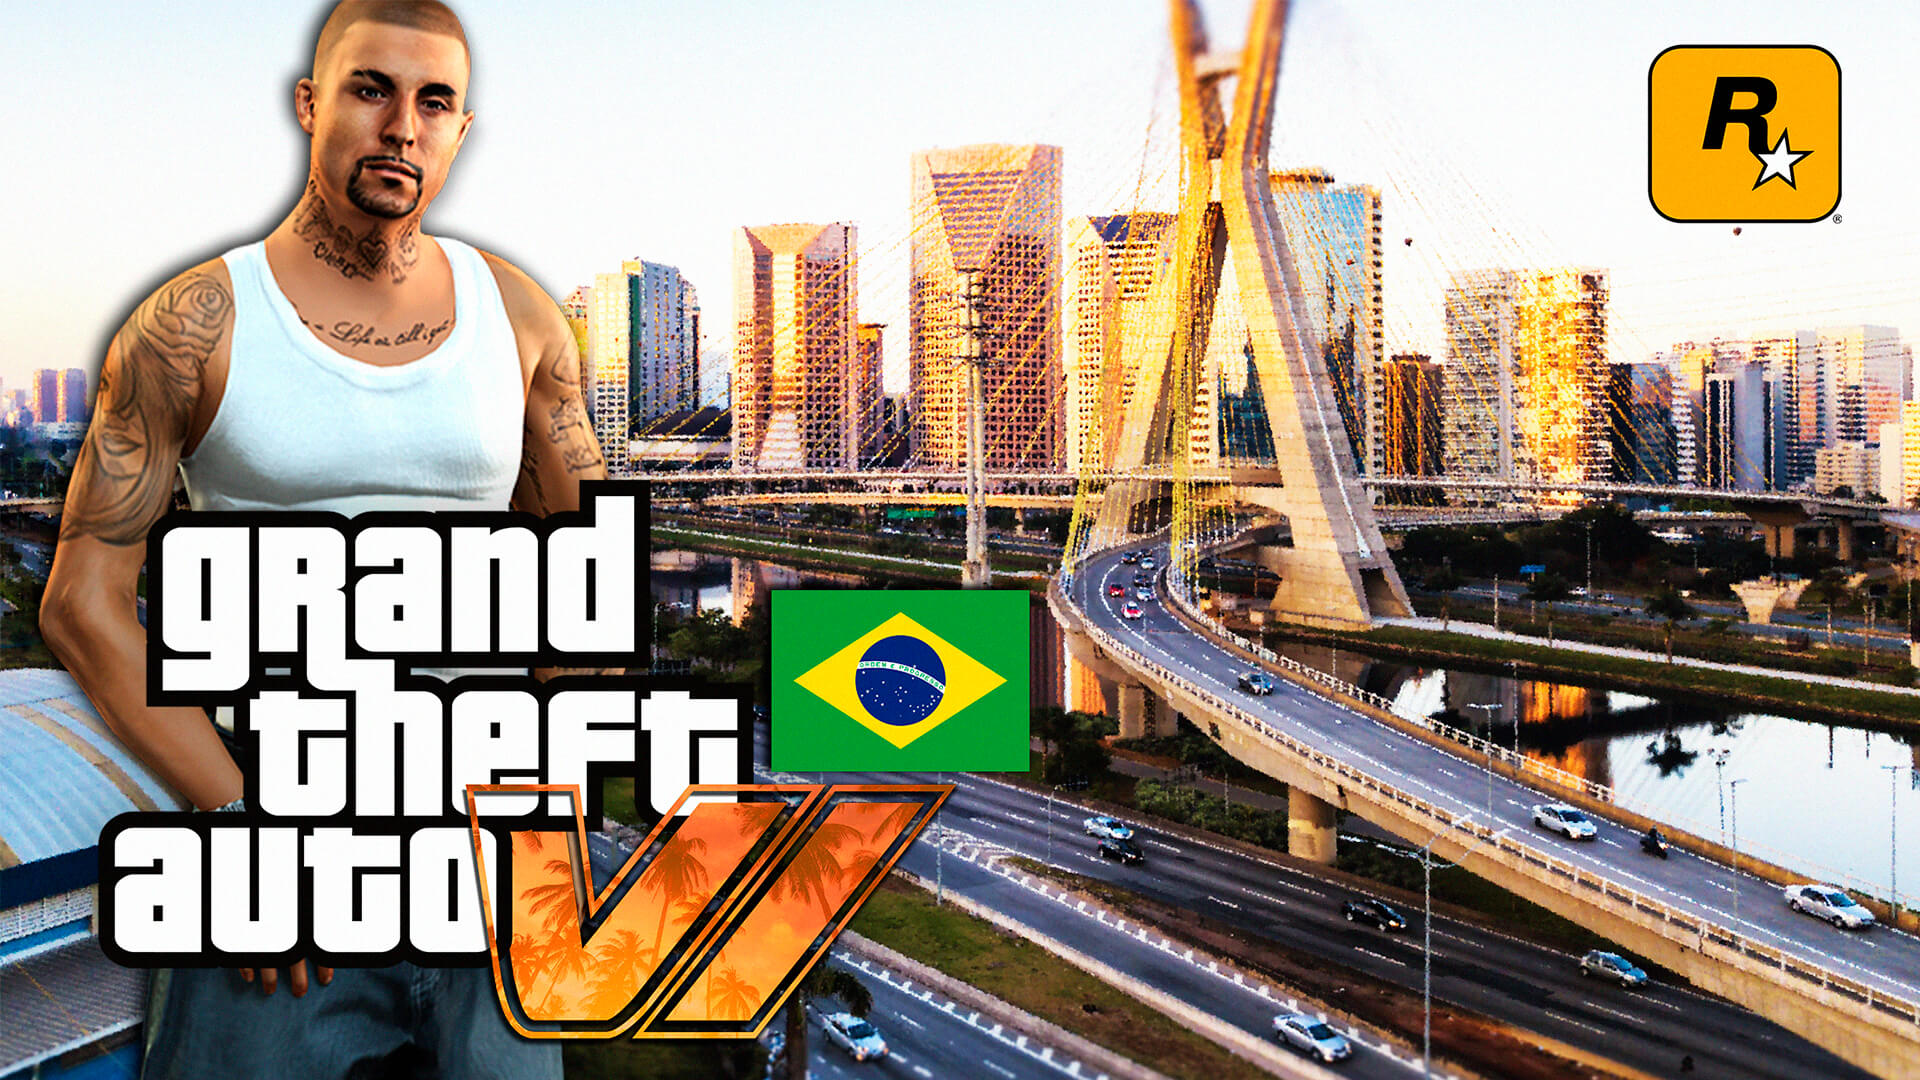 Um fã imaginou como seria Grand Theft Auto VI (GTA 6) em São Paulo no Brasil e postou no YouTube diversas imagens do conceito.